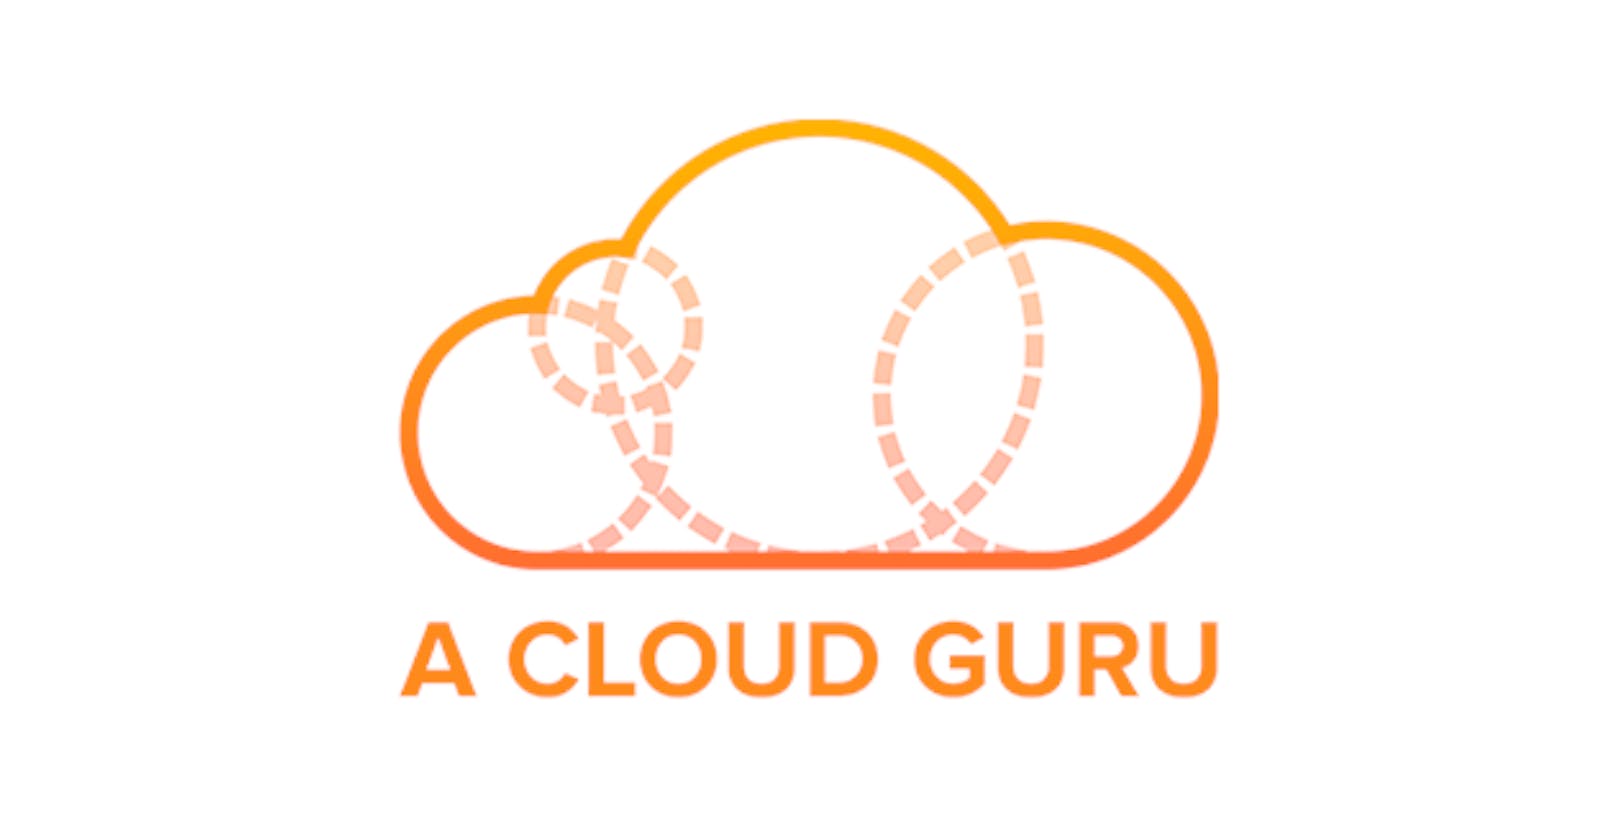 #CloudGuruChallenge